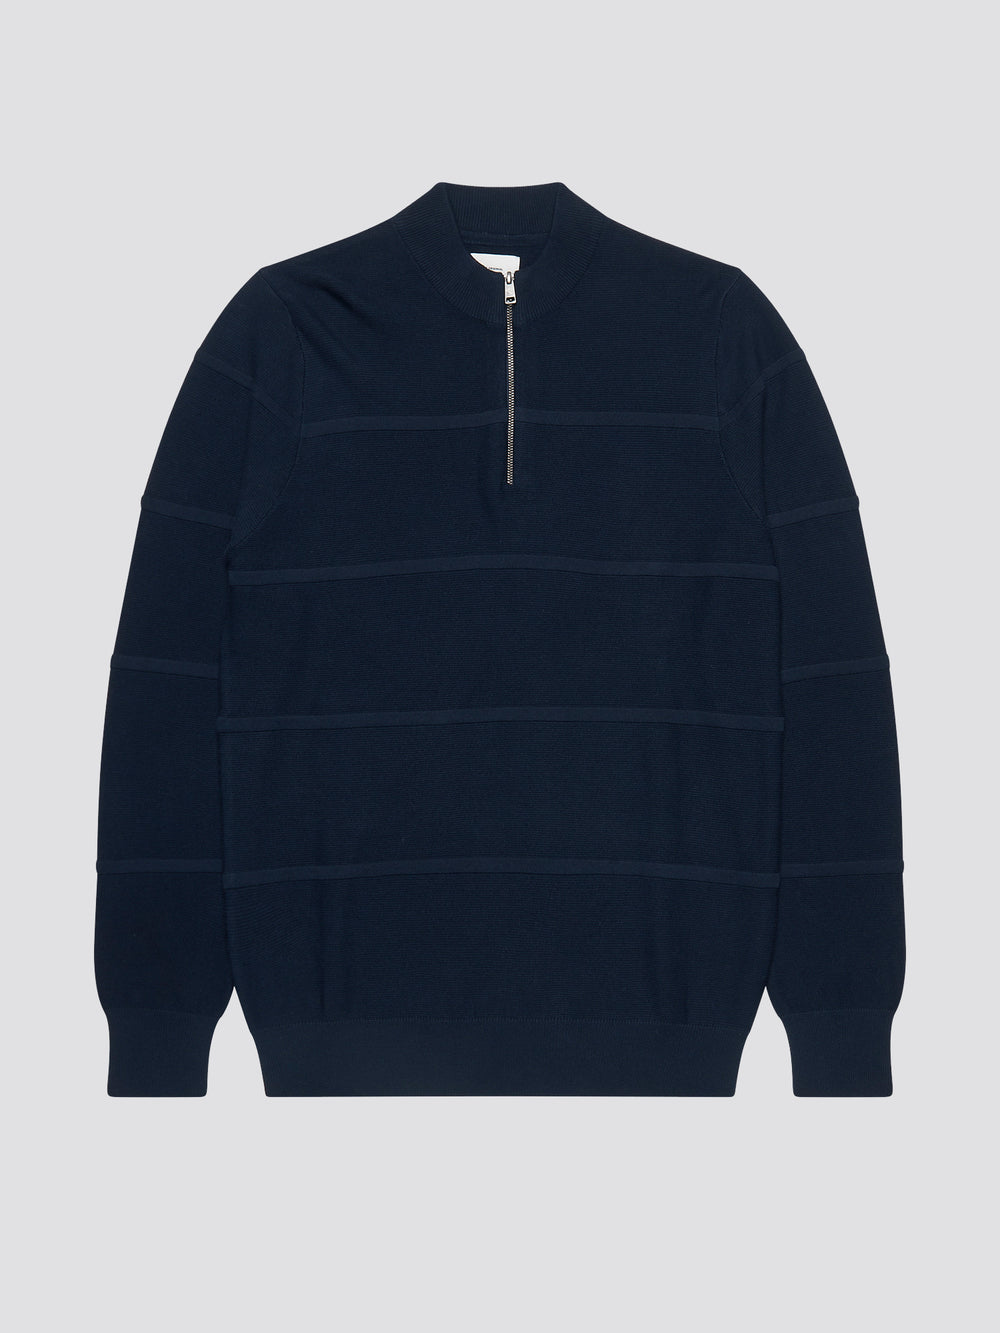 Textured Zip-Neck Knit Sweater - Marine